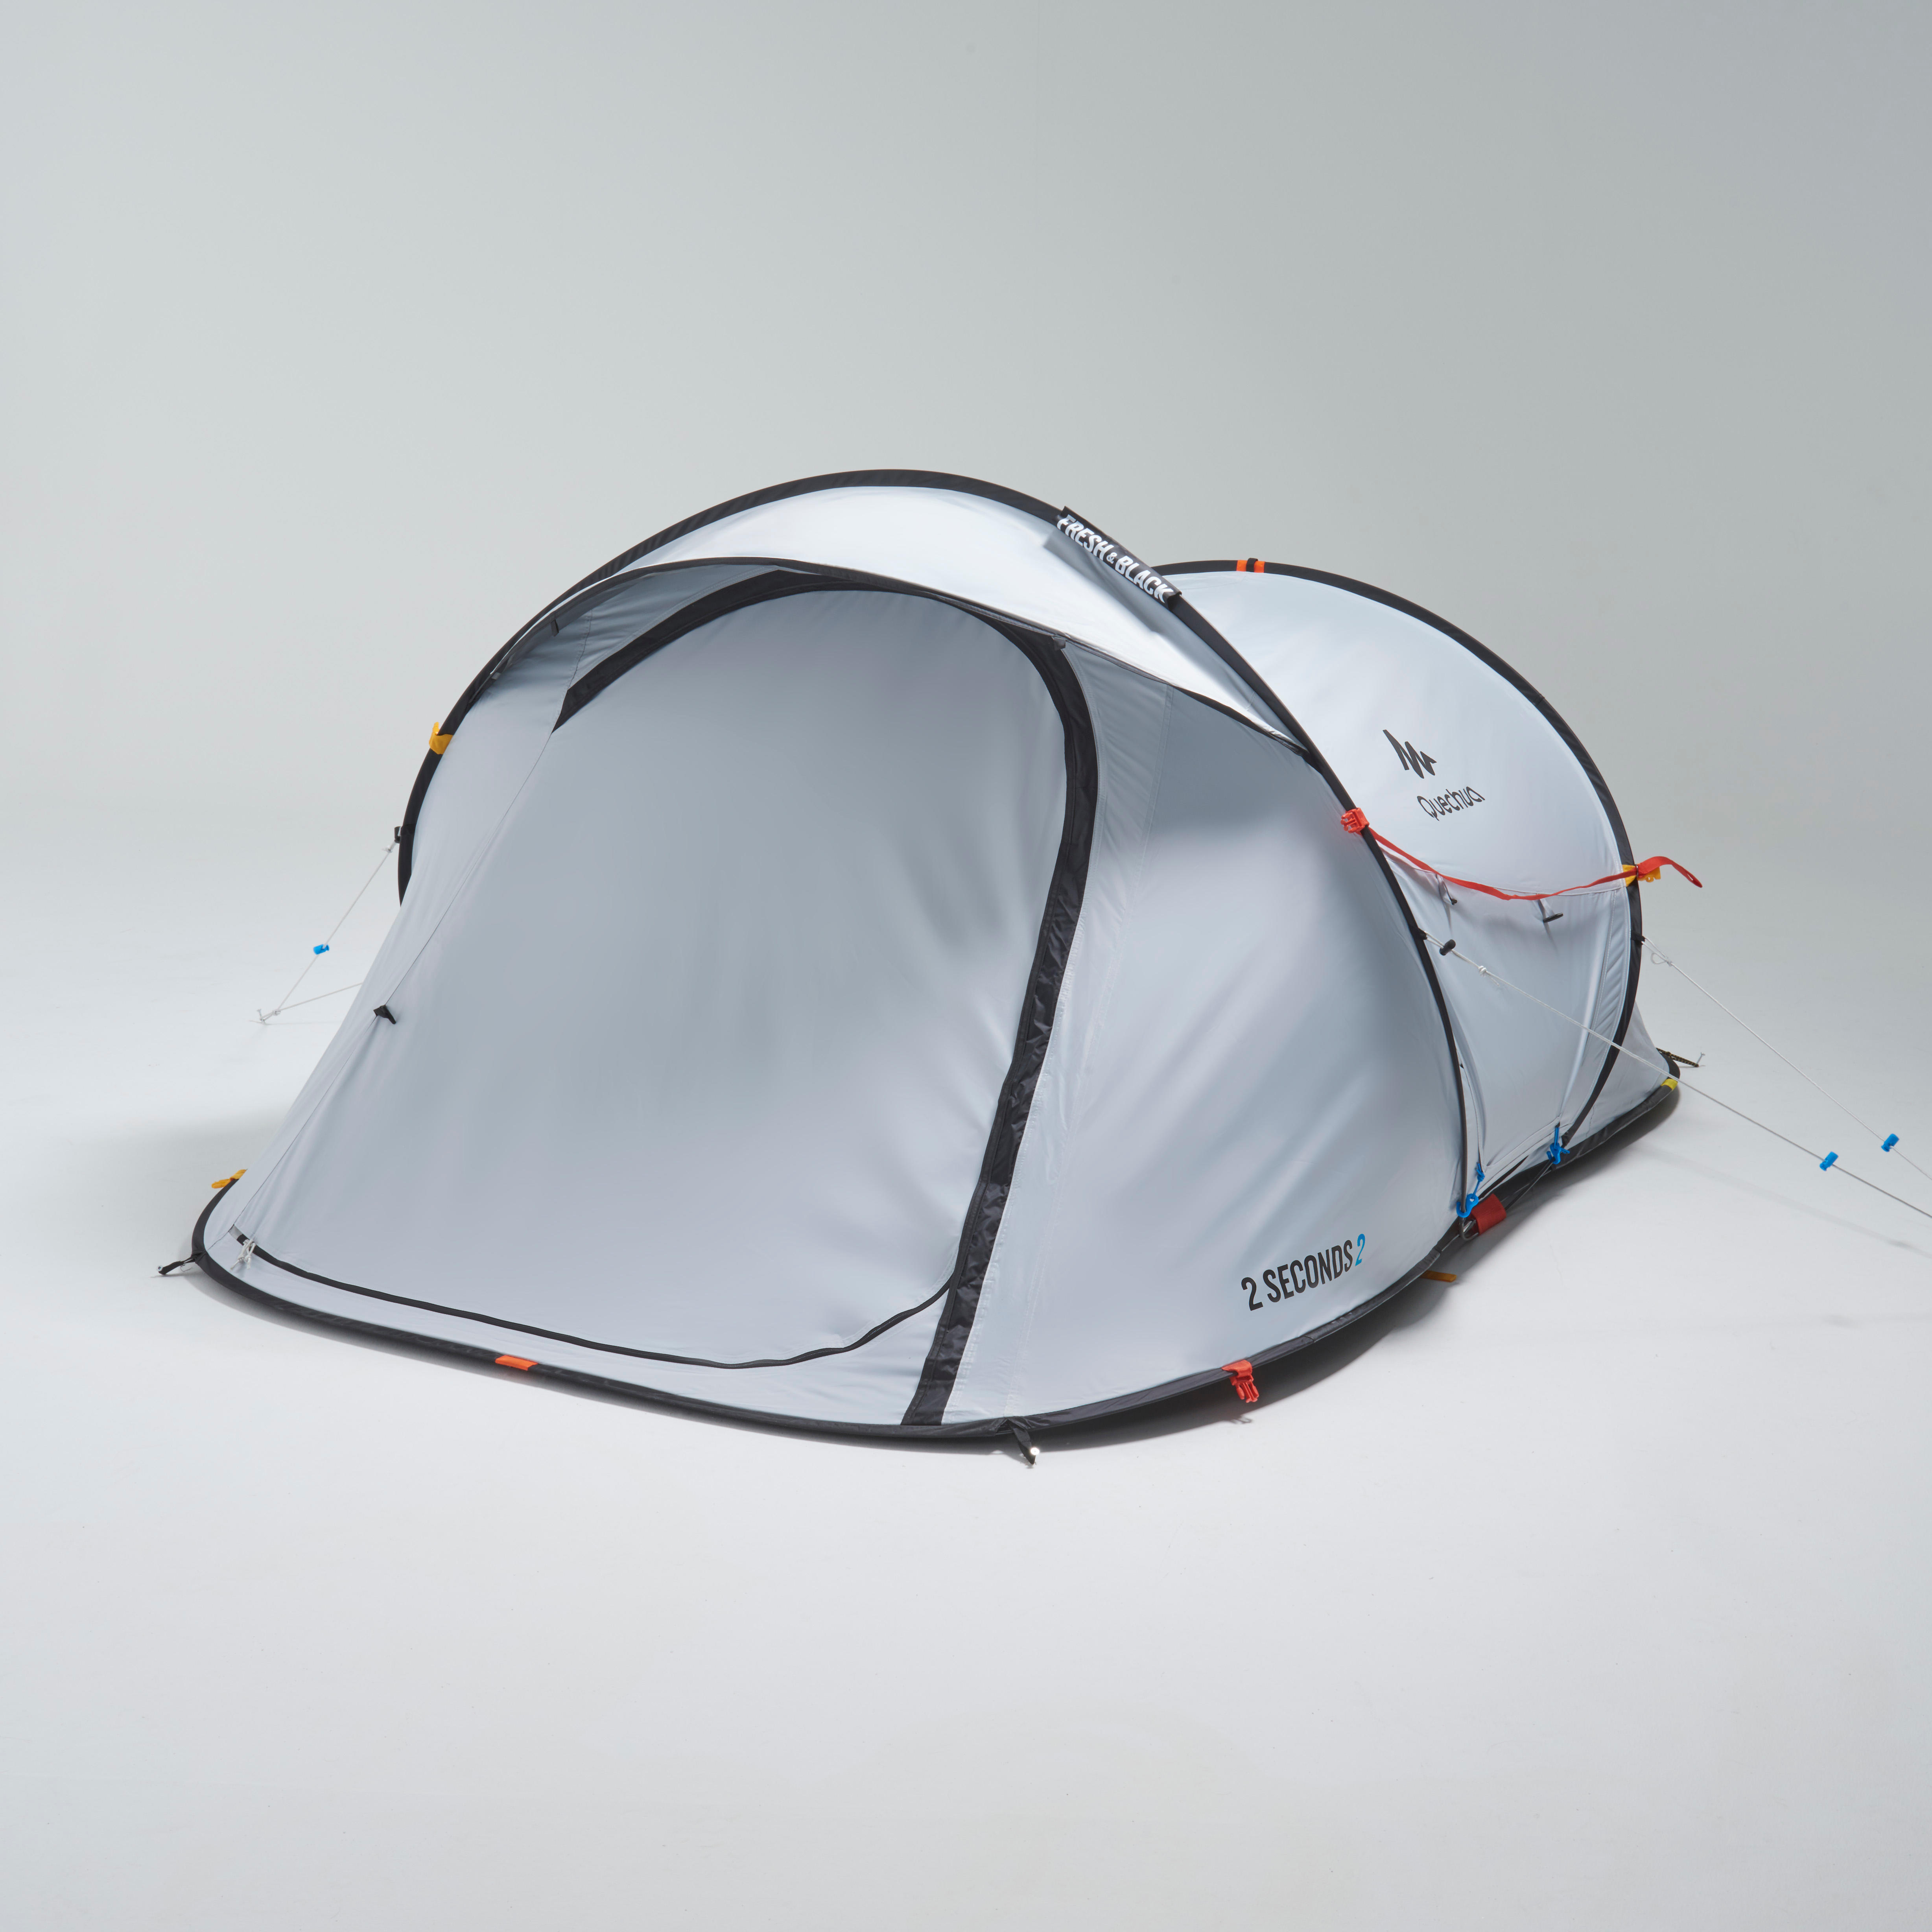 2-Person Camping Tent - 2 Seconds Fresh & Black - QUECHUA